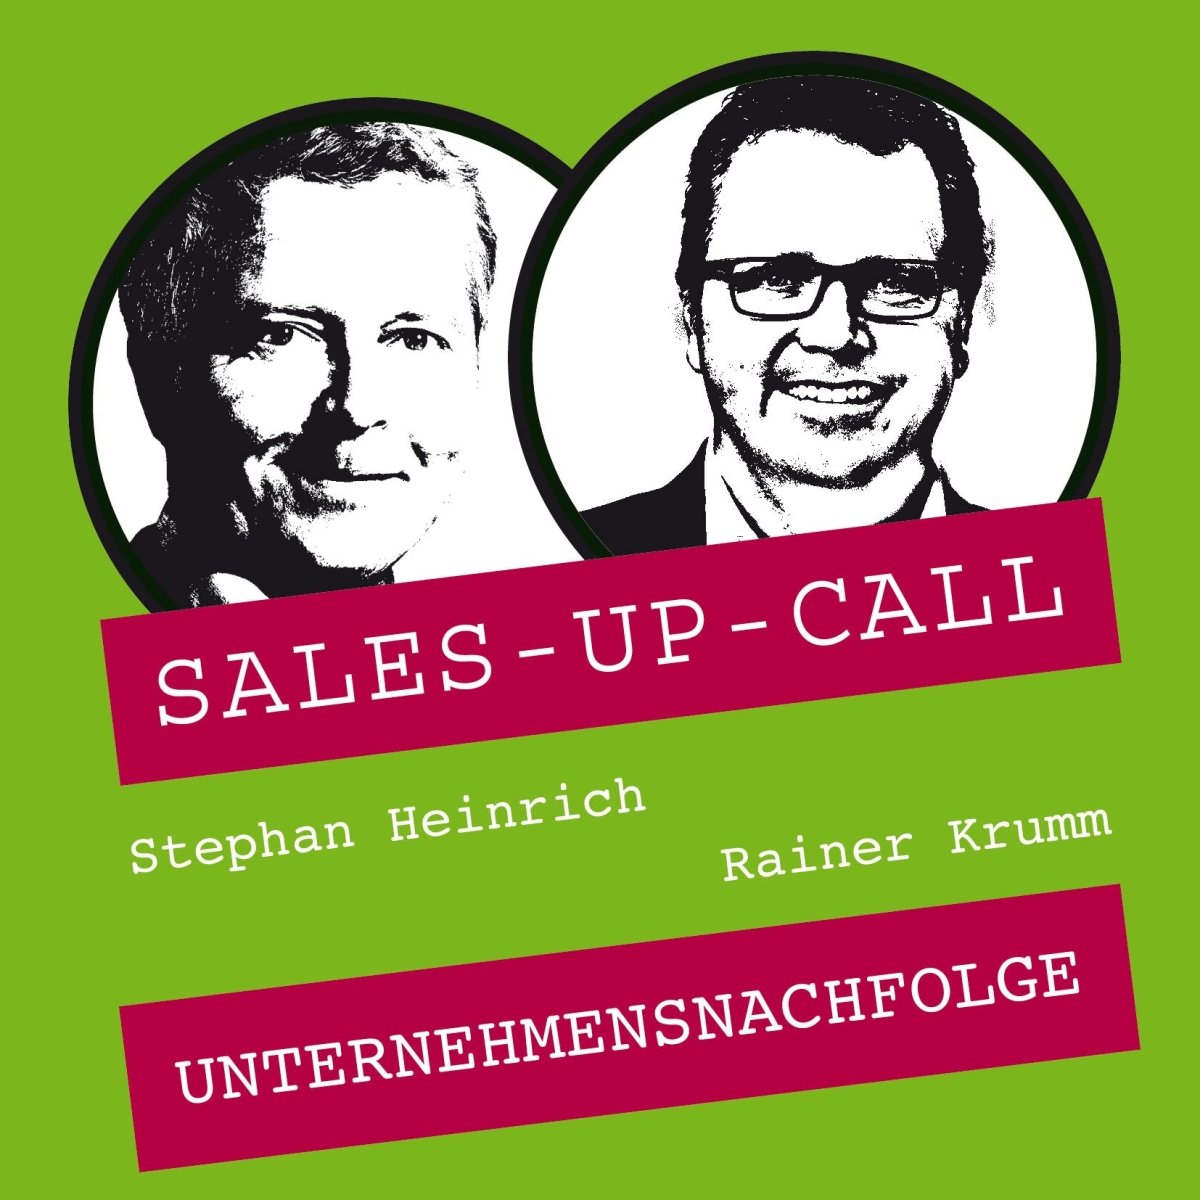 Unternehmensnachfolge - Sales-up-Call